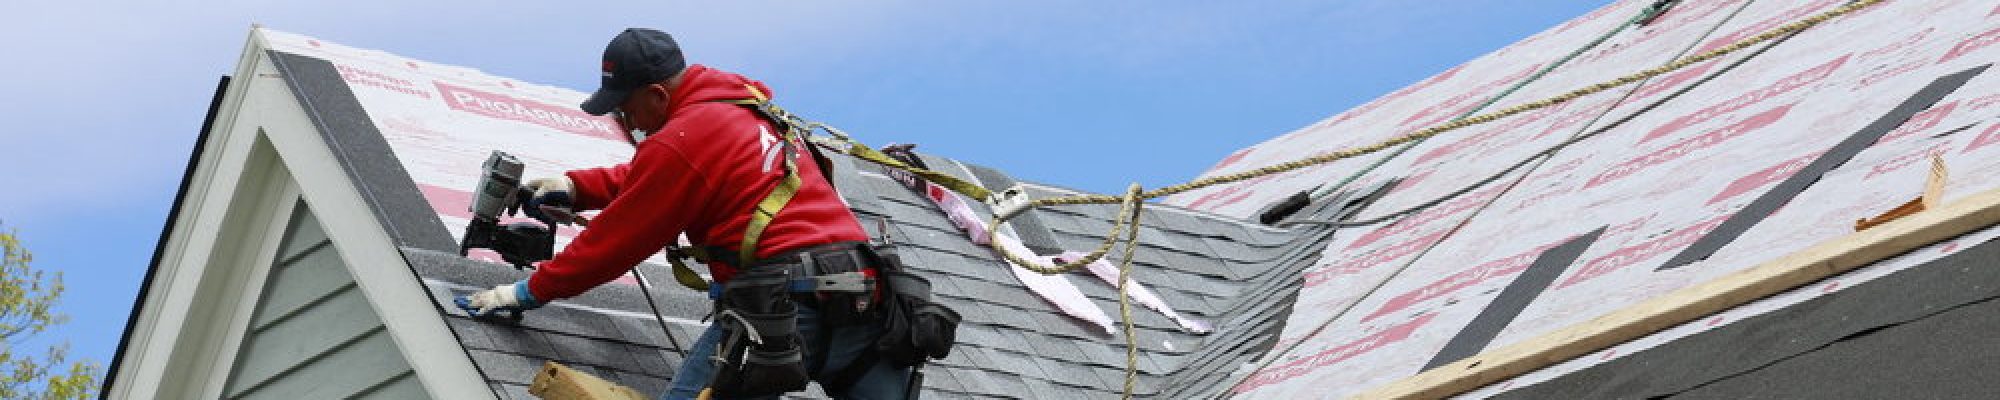 Roof-repair